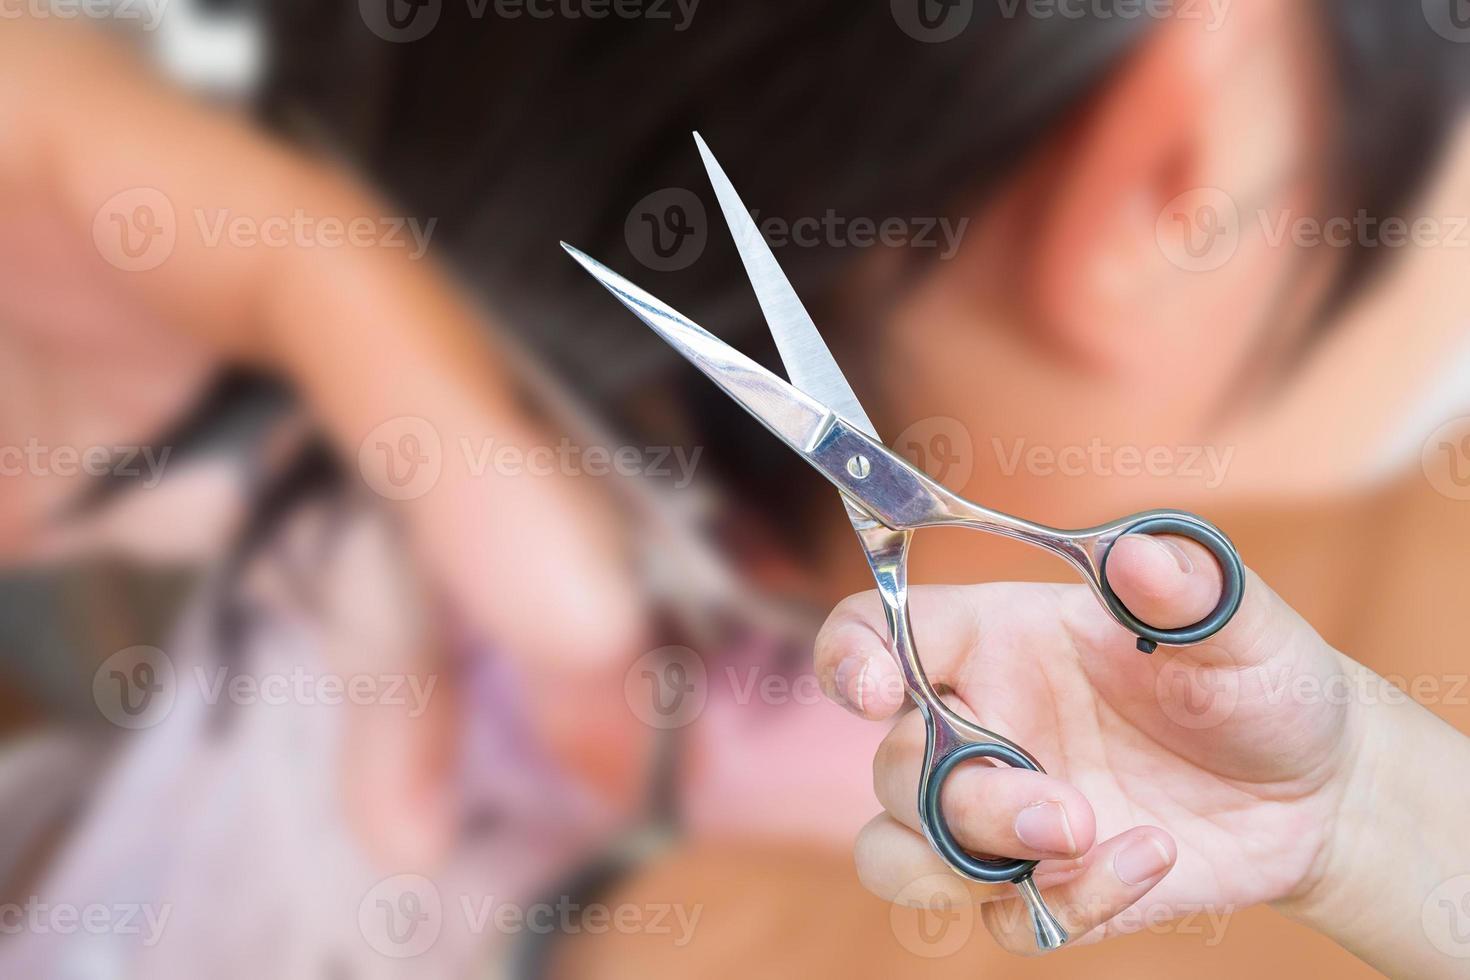 peluquero cortando cabello en salón de belleza foto